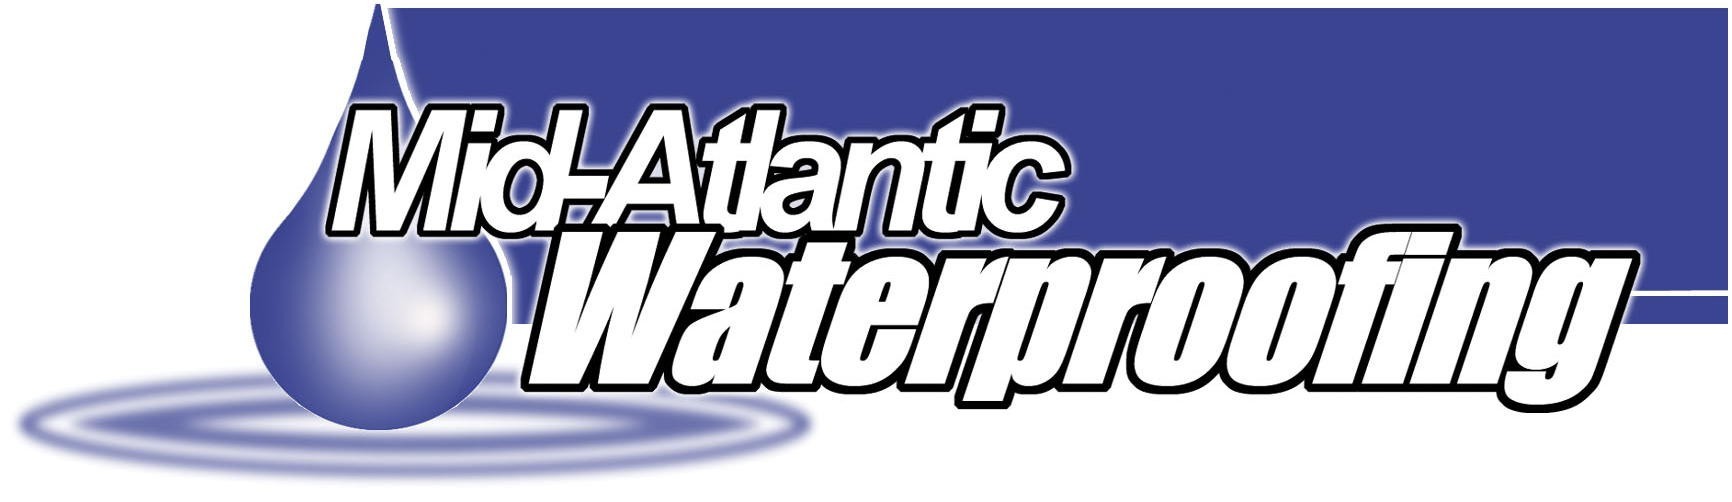 Mid Atlantic Waterproofing Logo